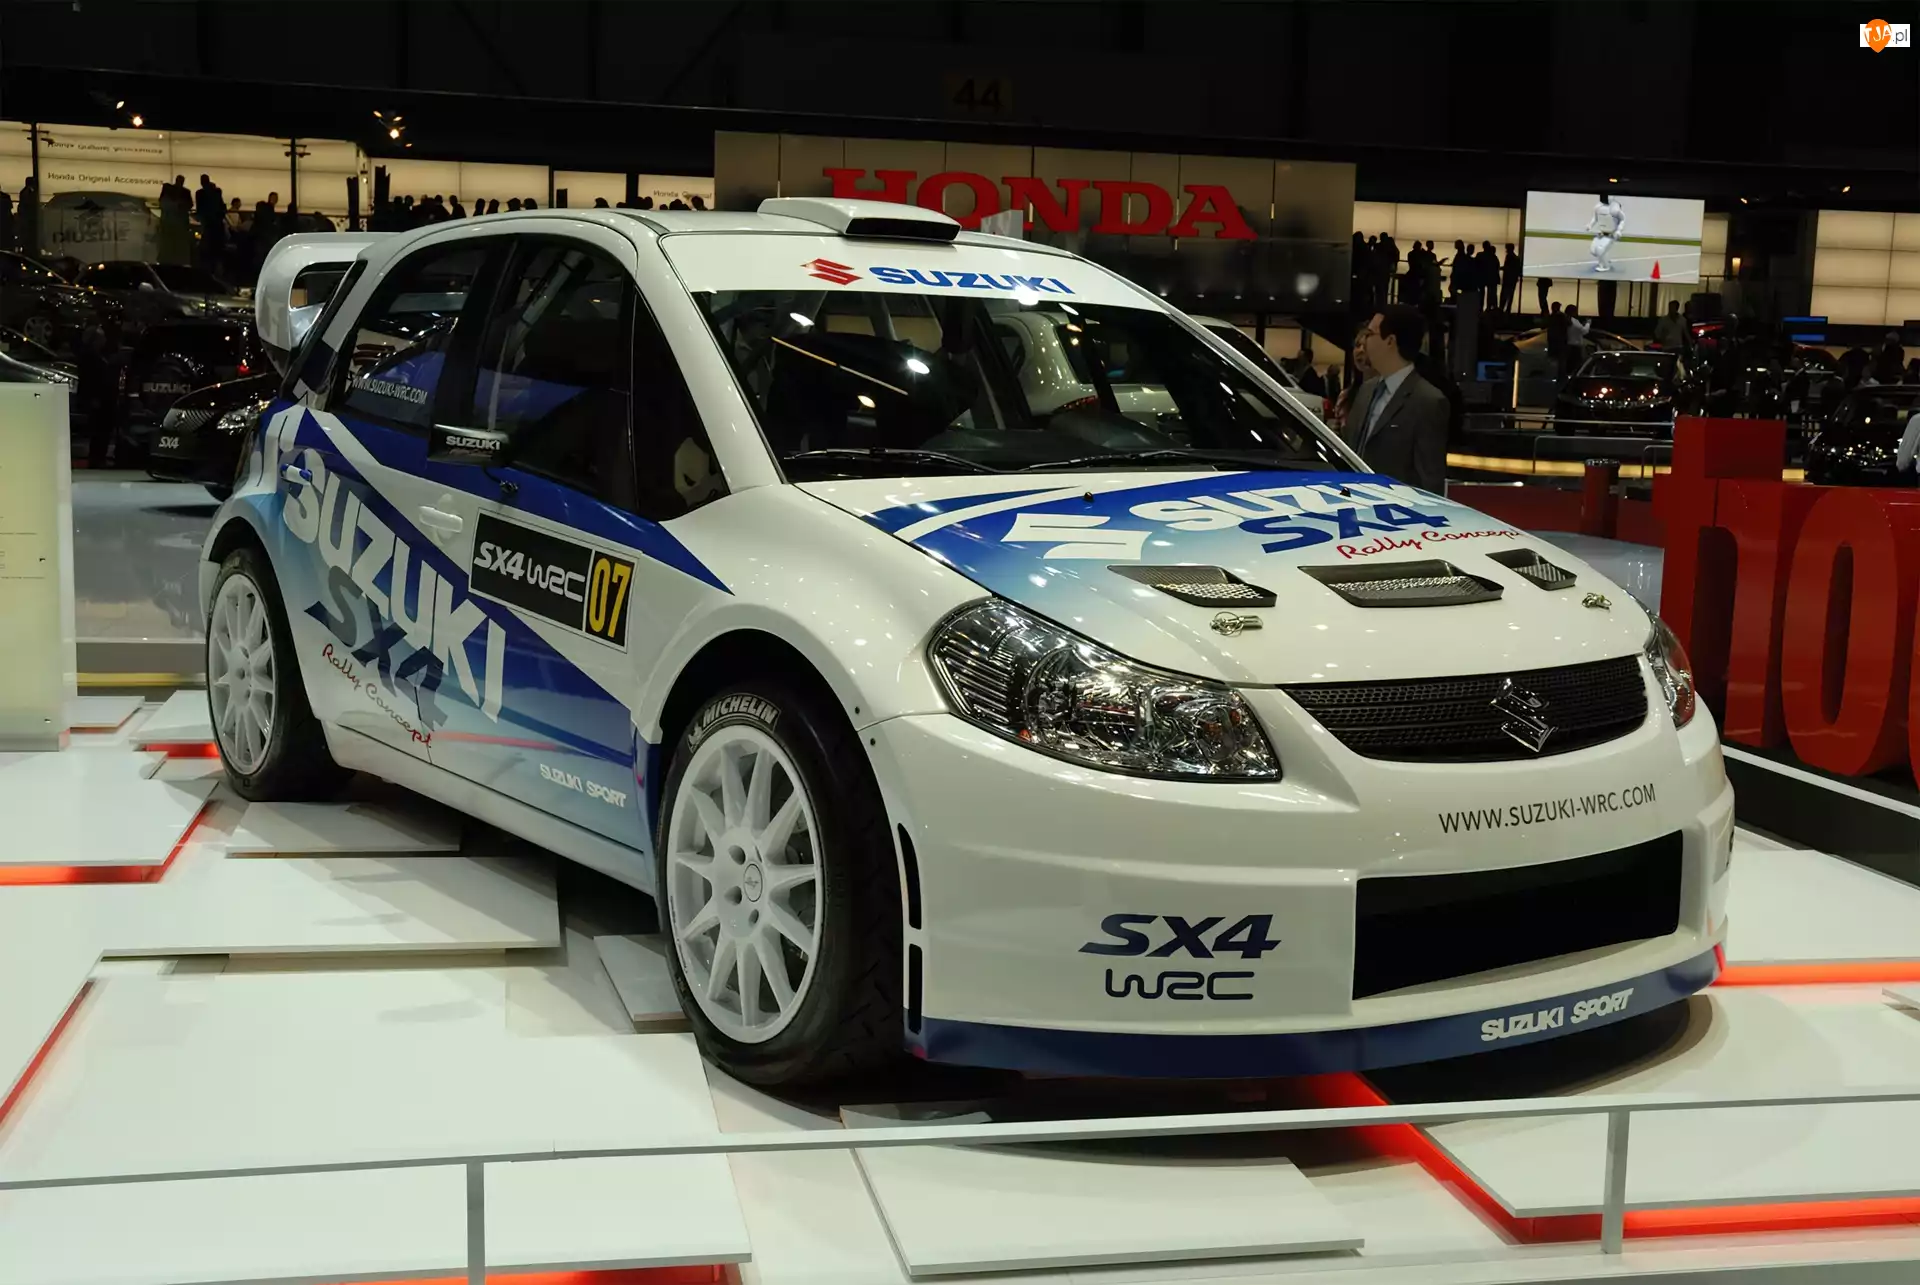 WRC, Pokaz, Suzuki SX4, Sport